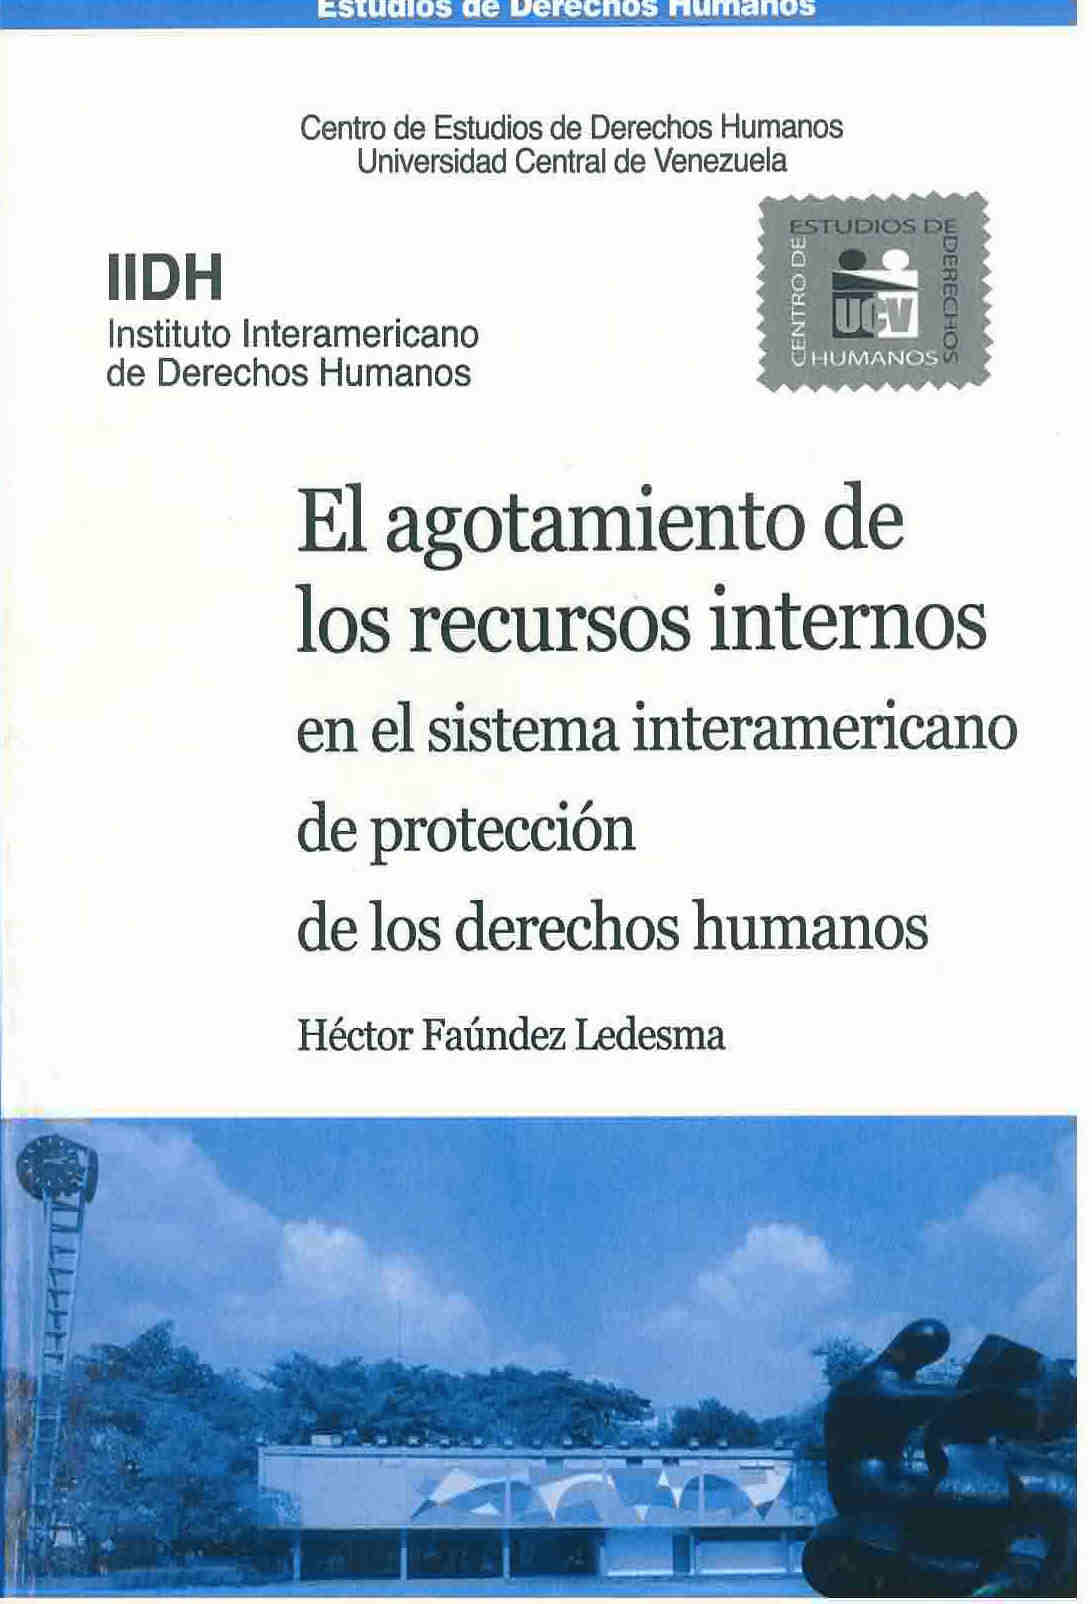 El agotamiento de los recursos internos en el sistema interamericano de protección de los derechos humanos